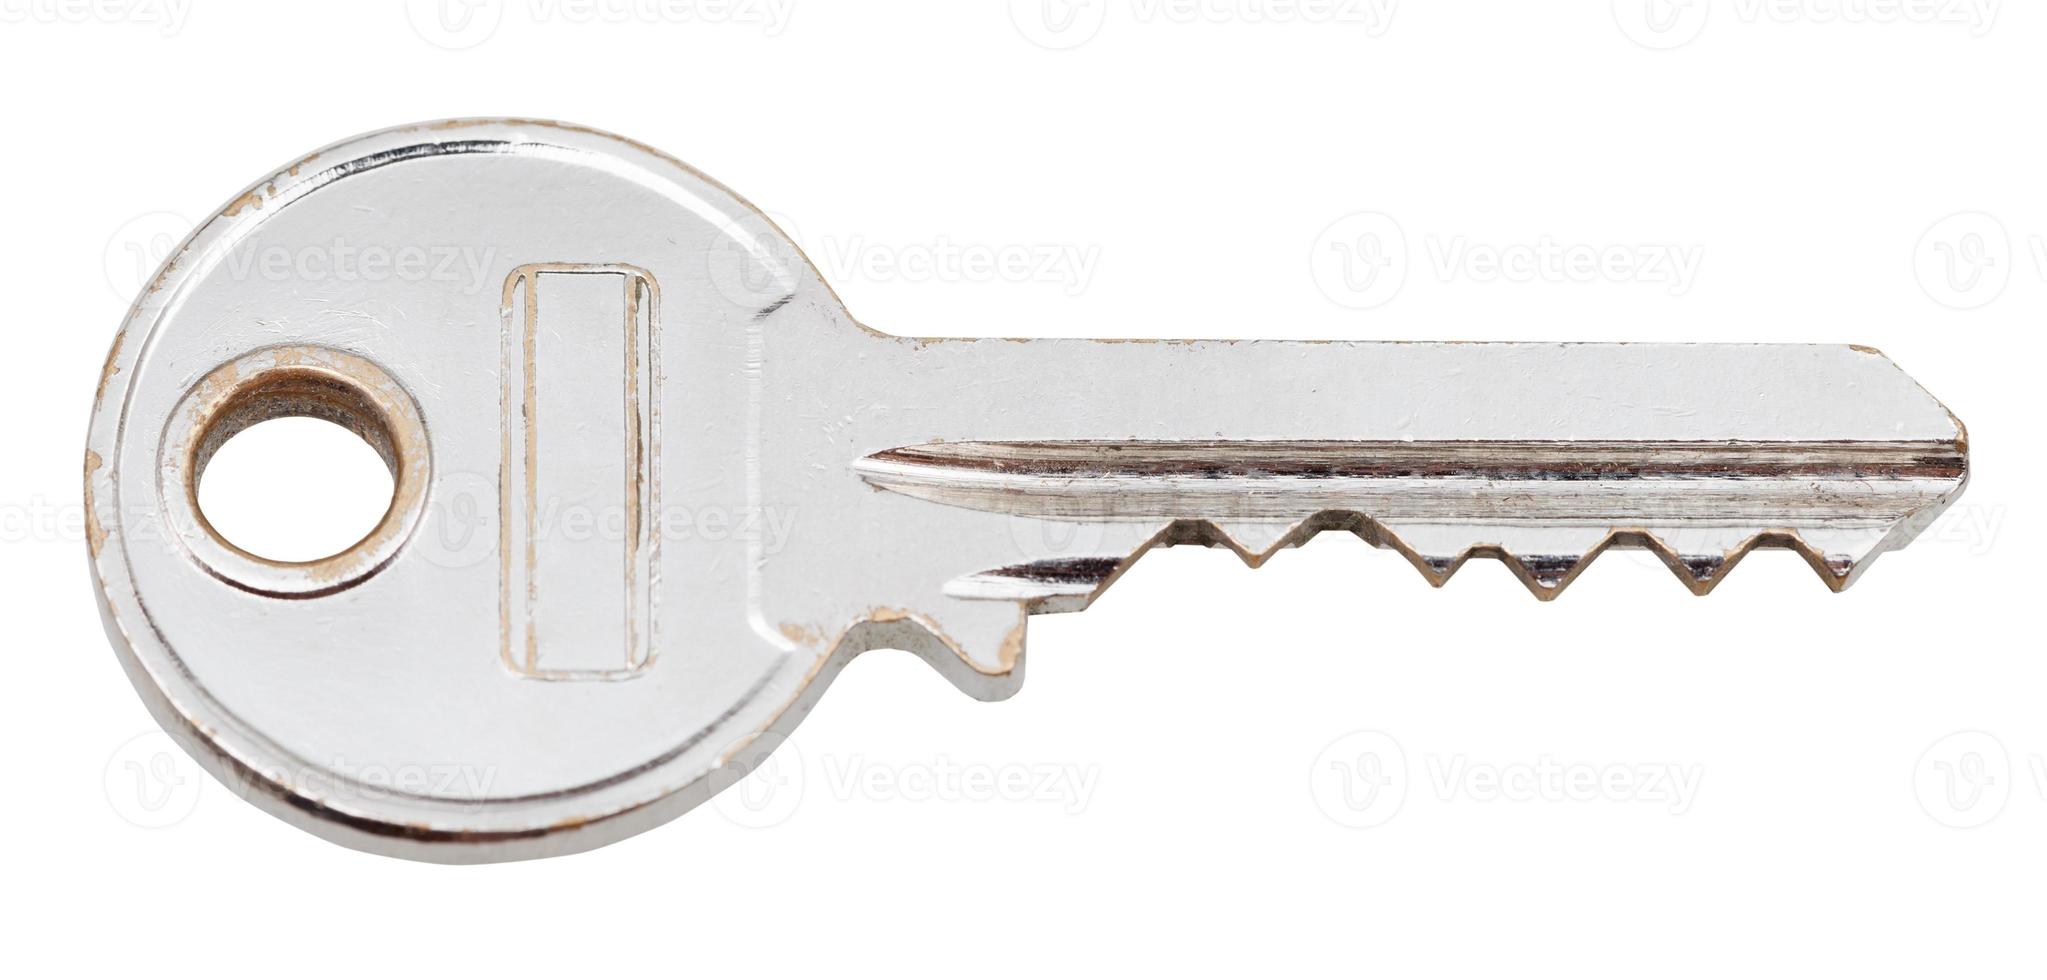 Begagnade stål dörr nyckel för cylinder låsa foto